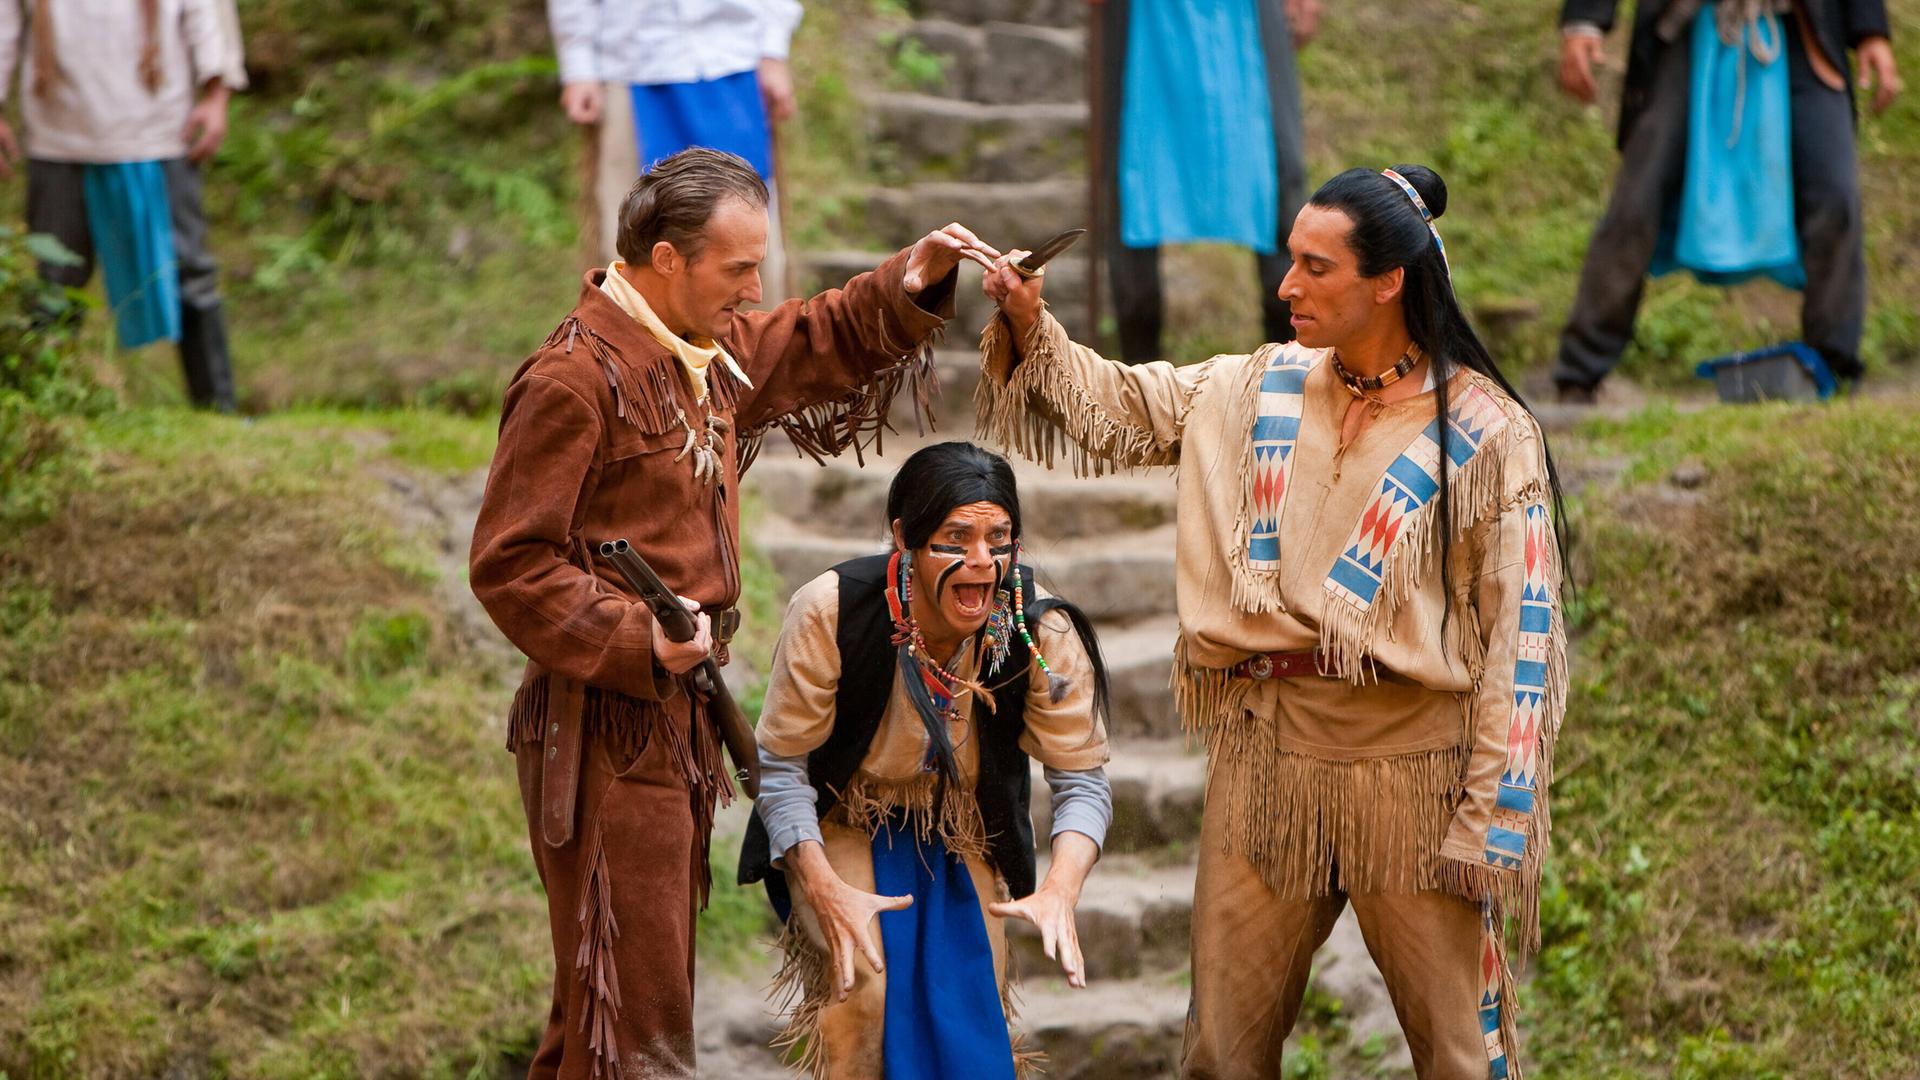 Szene aus der Karl-May-Festspiele Aufführung "Der Ölprinz". Links ein Indianer, rechts ein weisser Mann mit Gewehr.